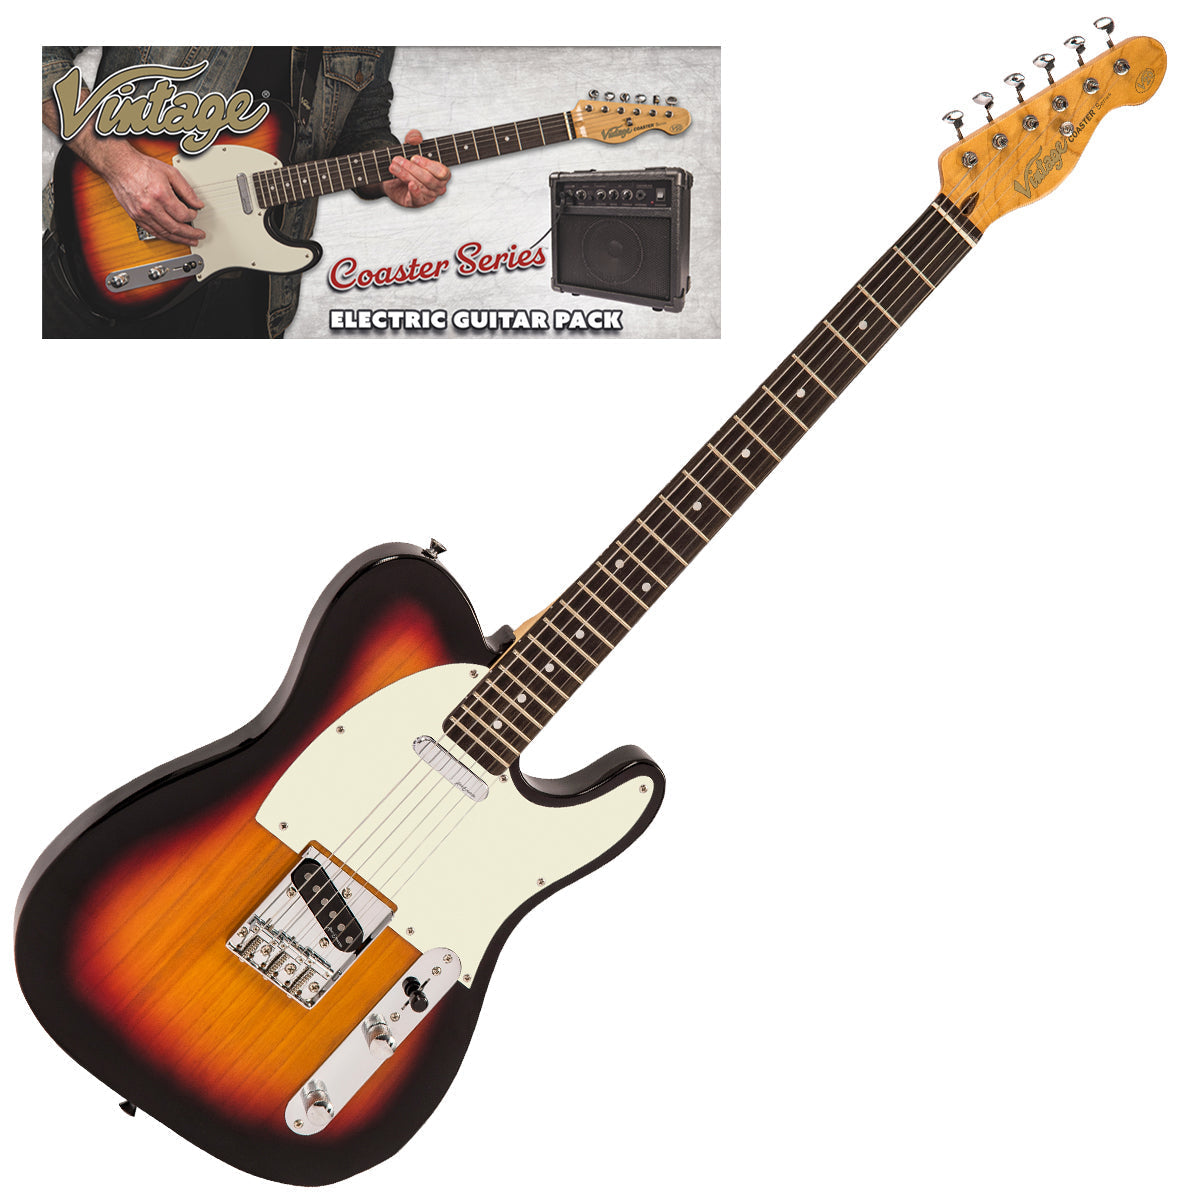 Vintage V20 Coaster Series Electric Guitar Pack ~ 3 Tone Sunburst, Electric Guitar for sale at Richards Guitars.